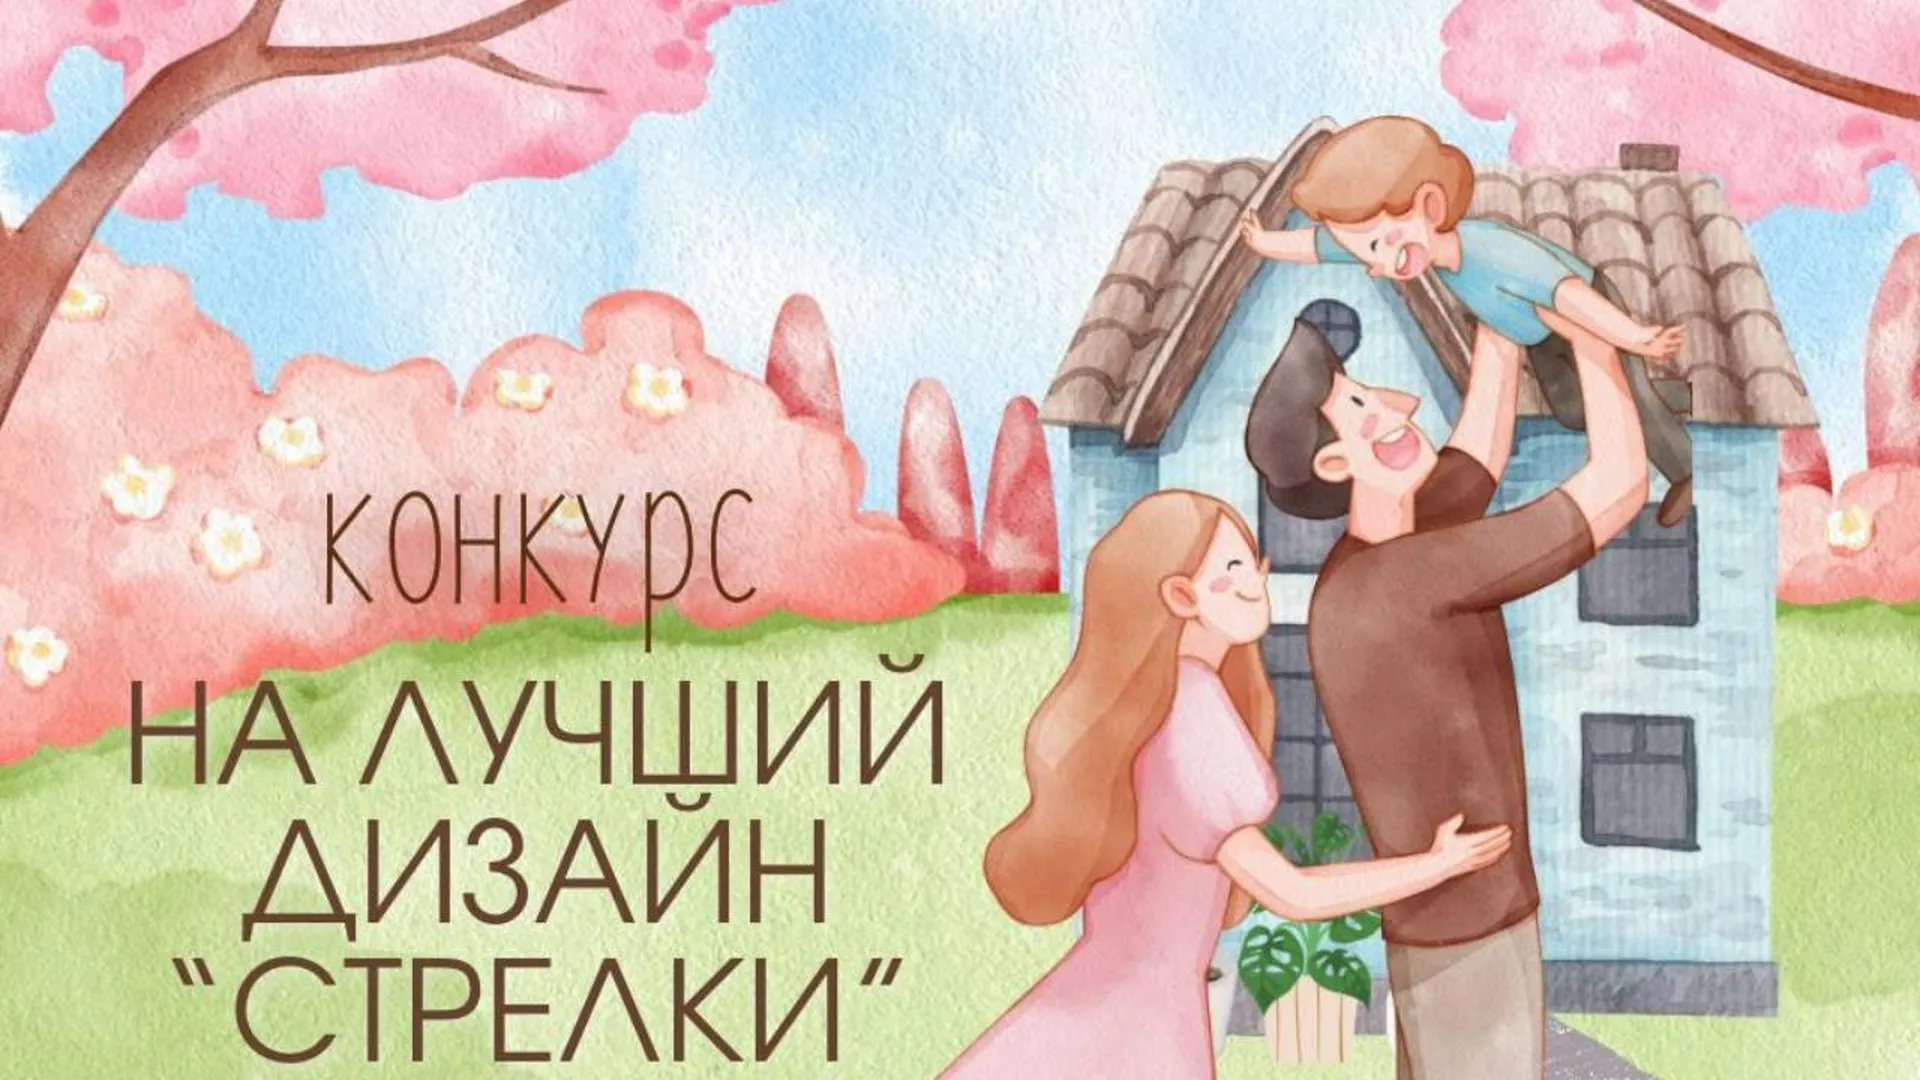 В Подмосковье стартовал конкурс на лучший дизайн карты «Стрелка», приуроченный к Году семьи в России